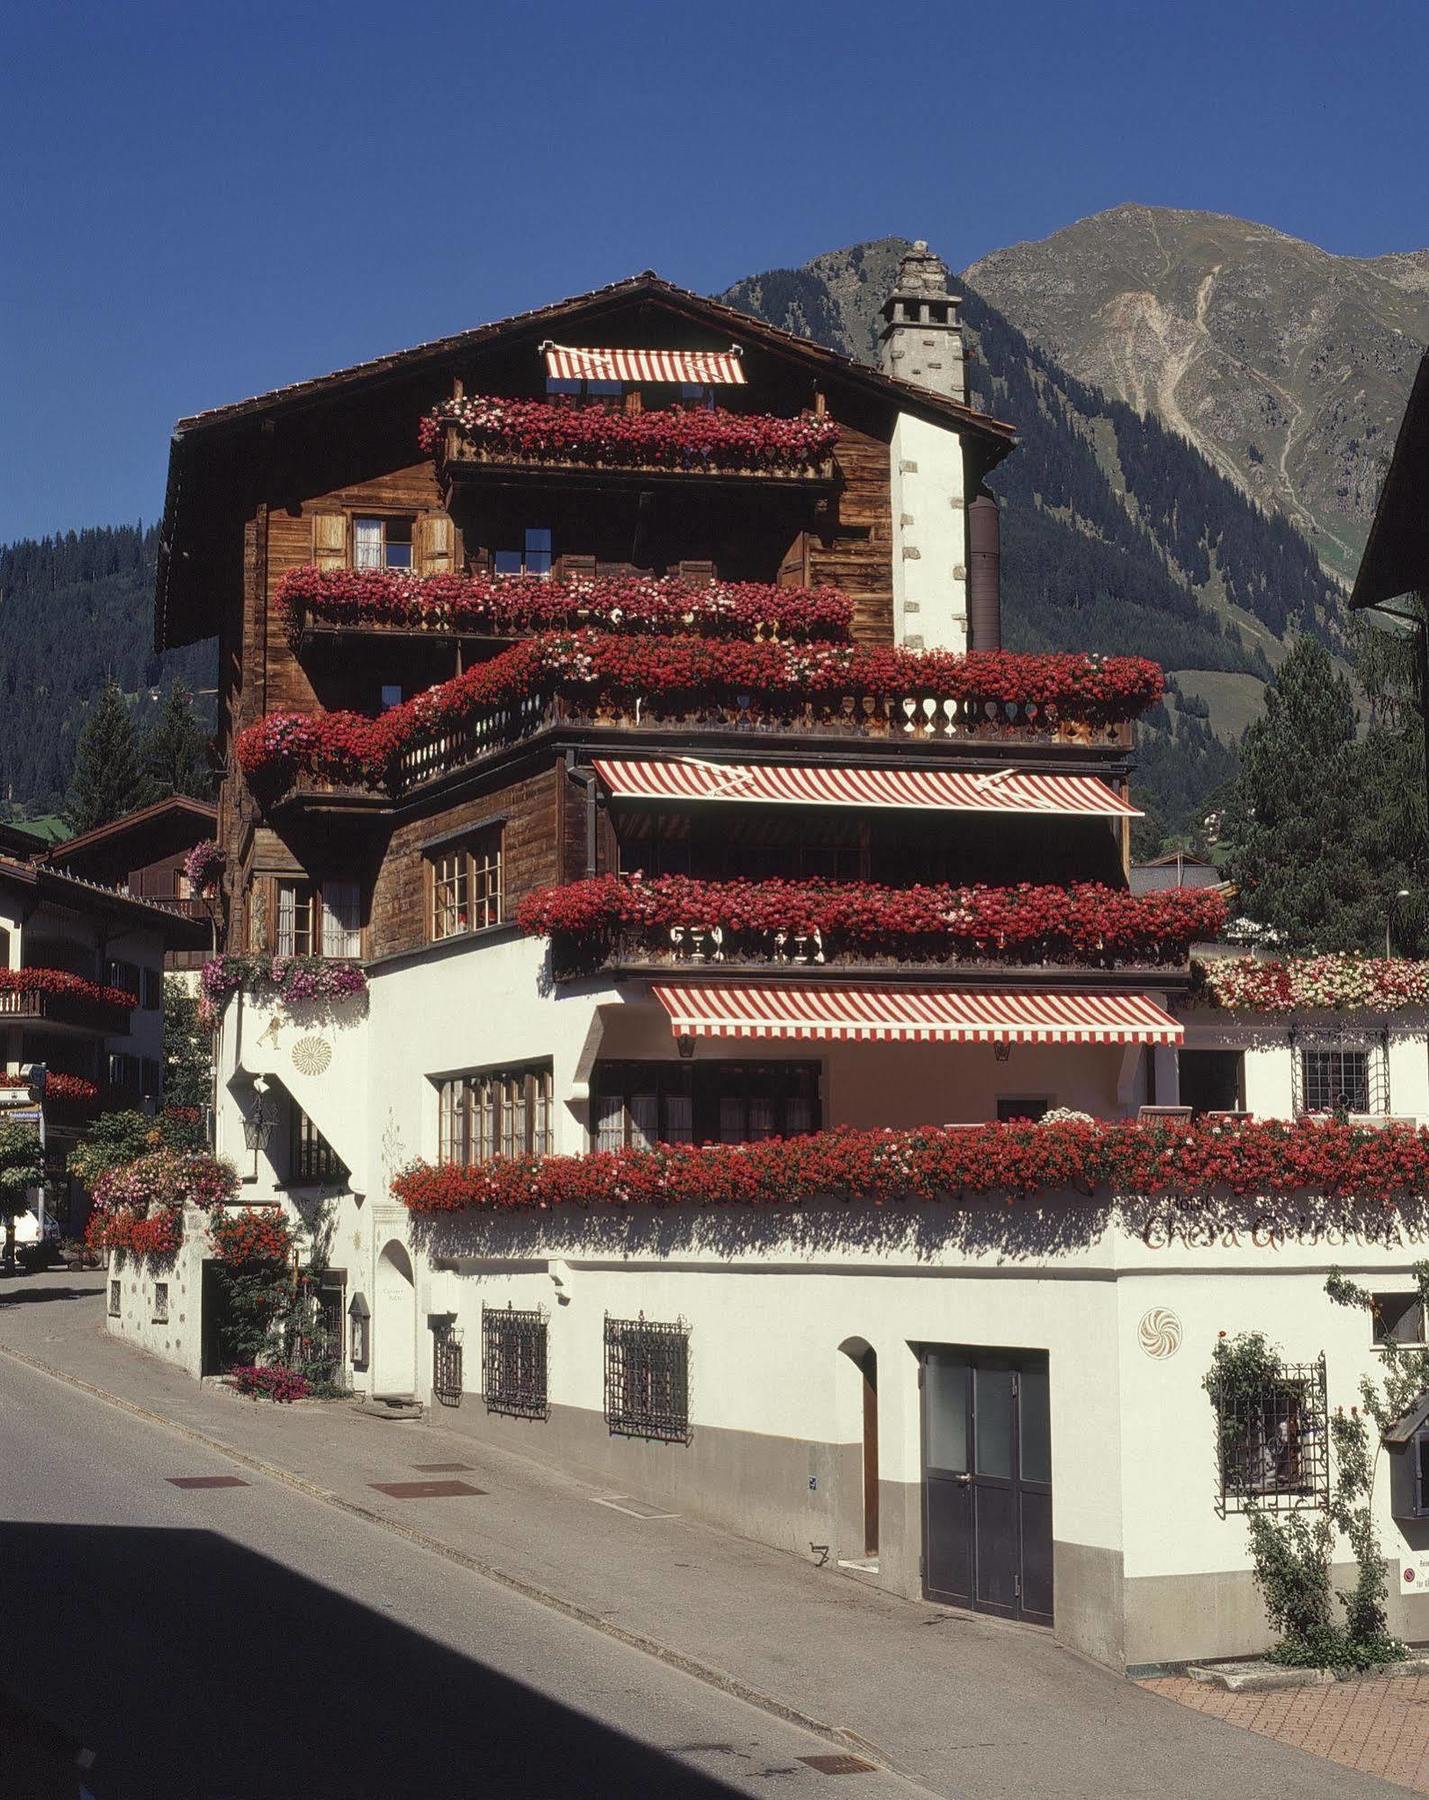 Hotel Chesa Grischuna โคลสเตอร์ ภายนอก รูปภาพ